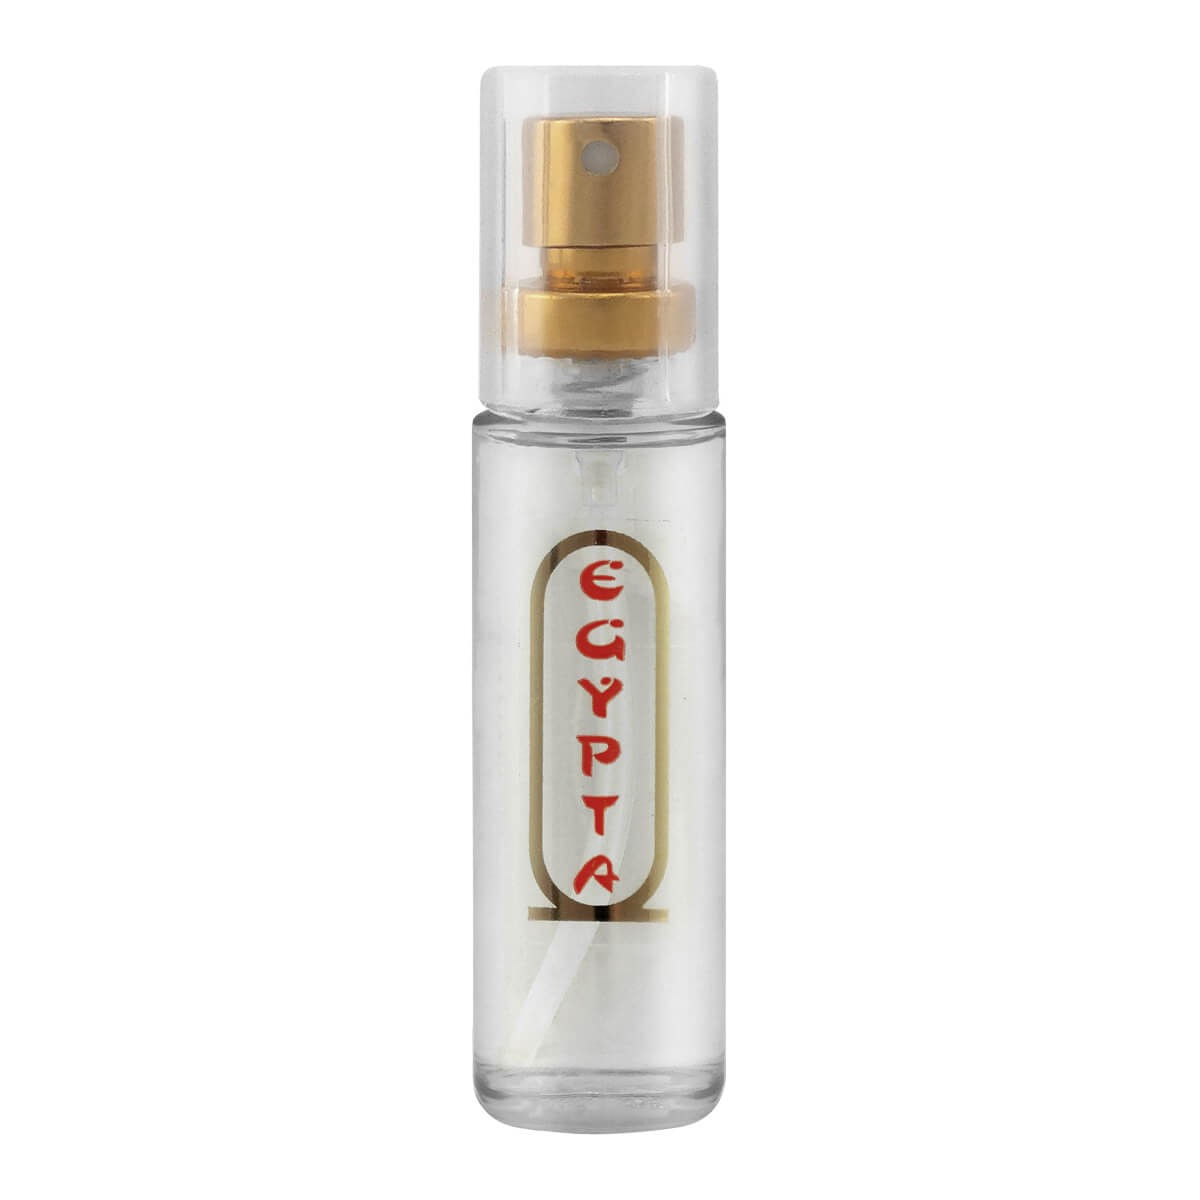 Egypta Perfume Unisex com Essências Egipcias 15 ml Menu dos Prazeres